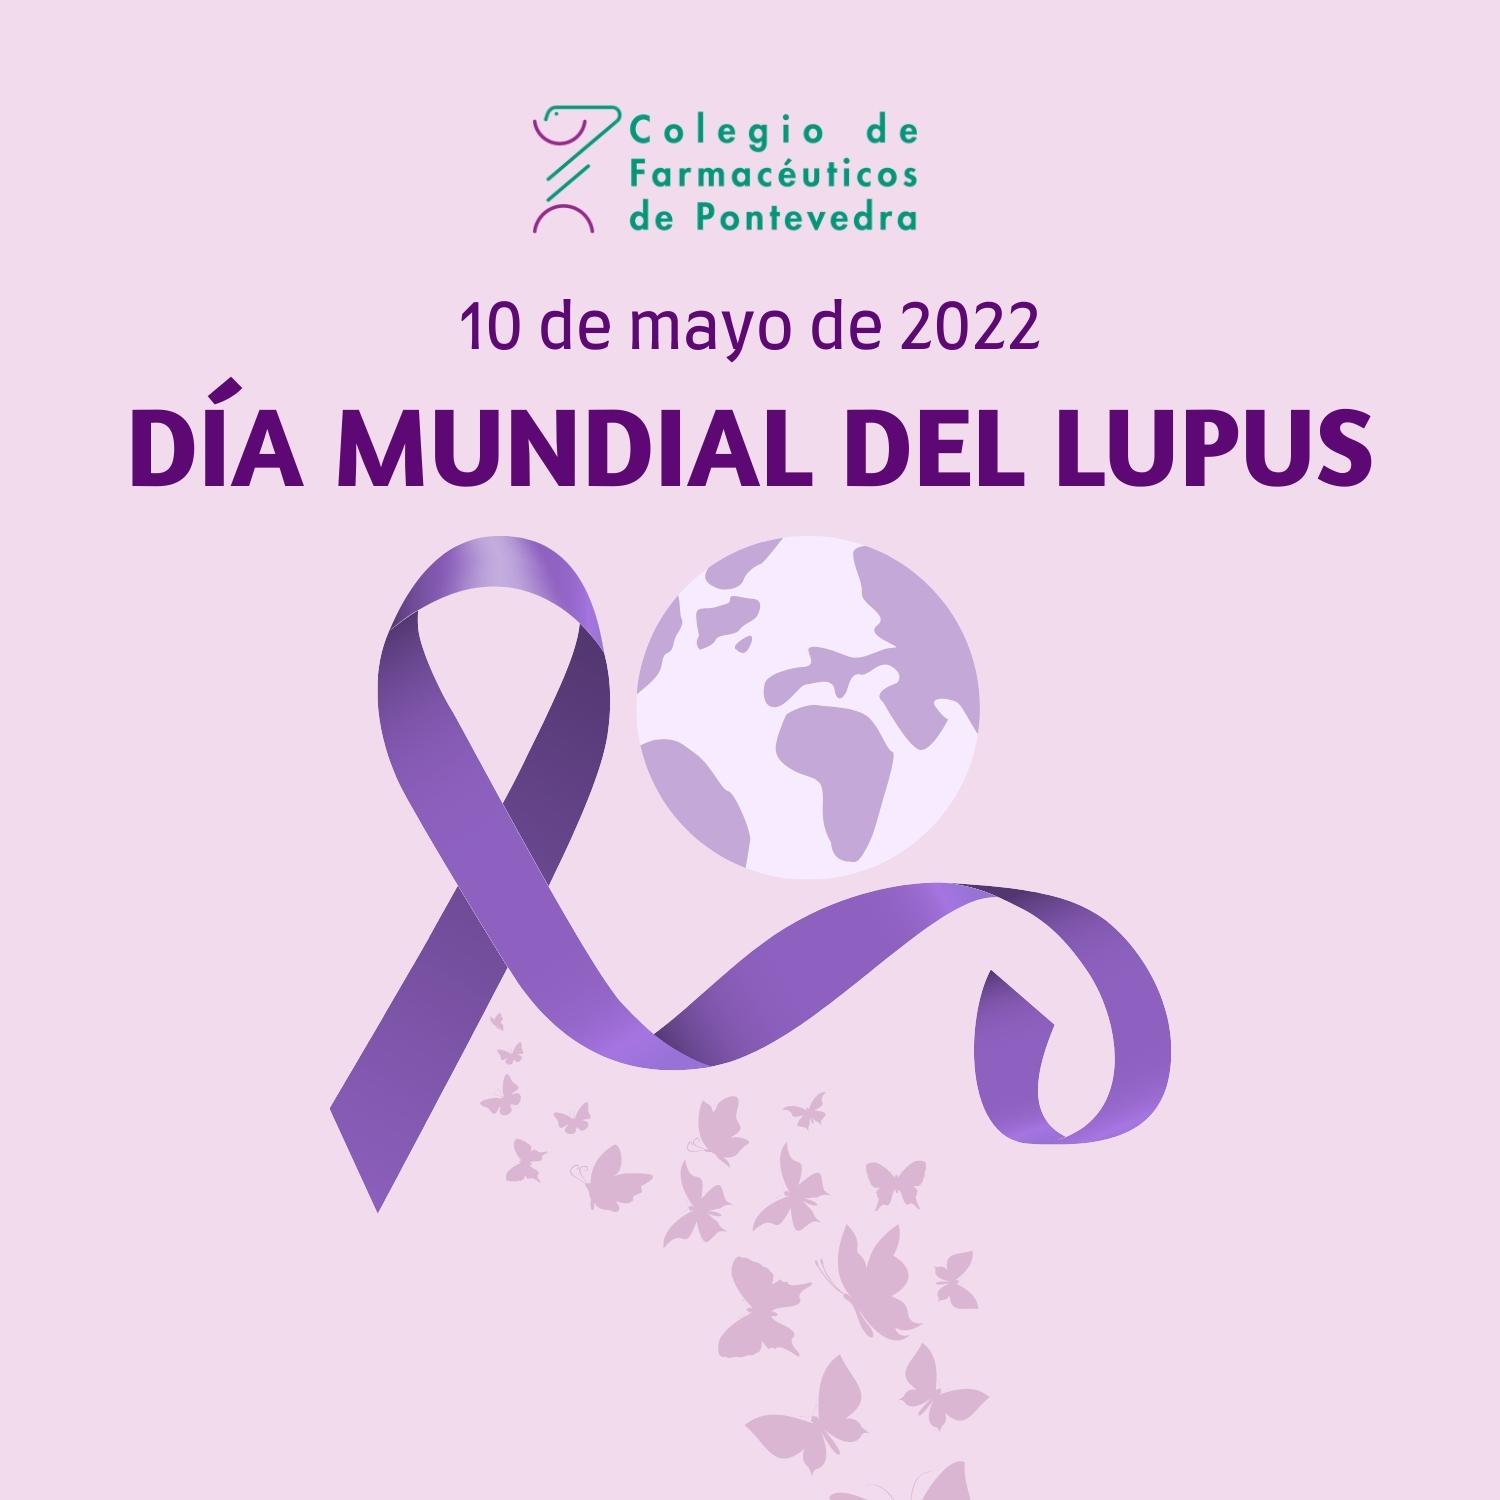 Día Mundial del Lupus - Colegio de Farmacéuticos de Pontevedra